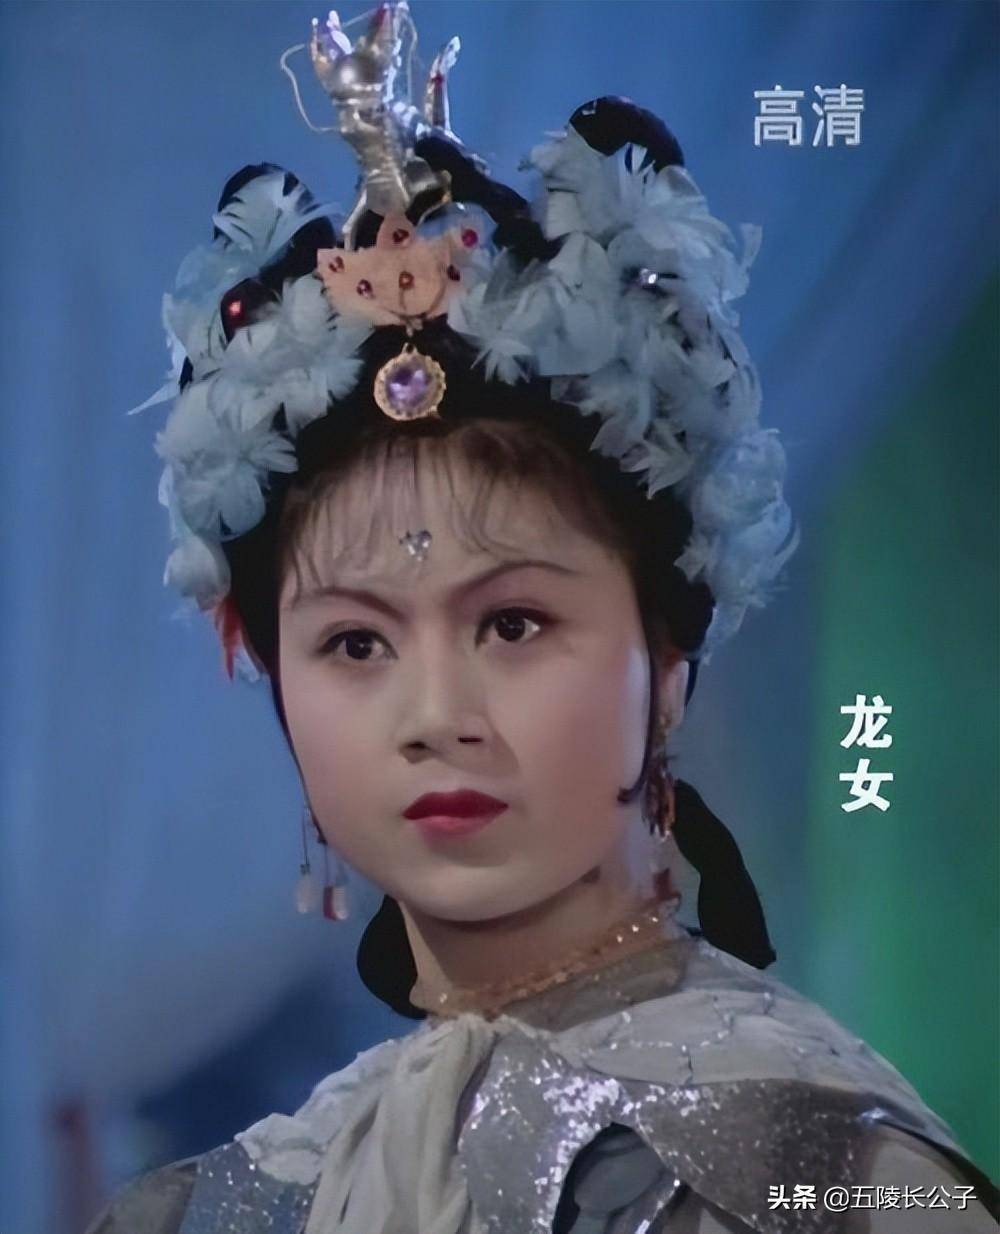 三,龙女这部电影也是著名艺术家严凤英的代表作品,其中一些经典唱段